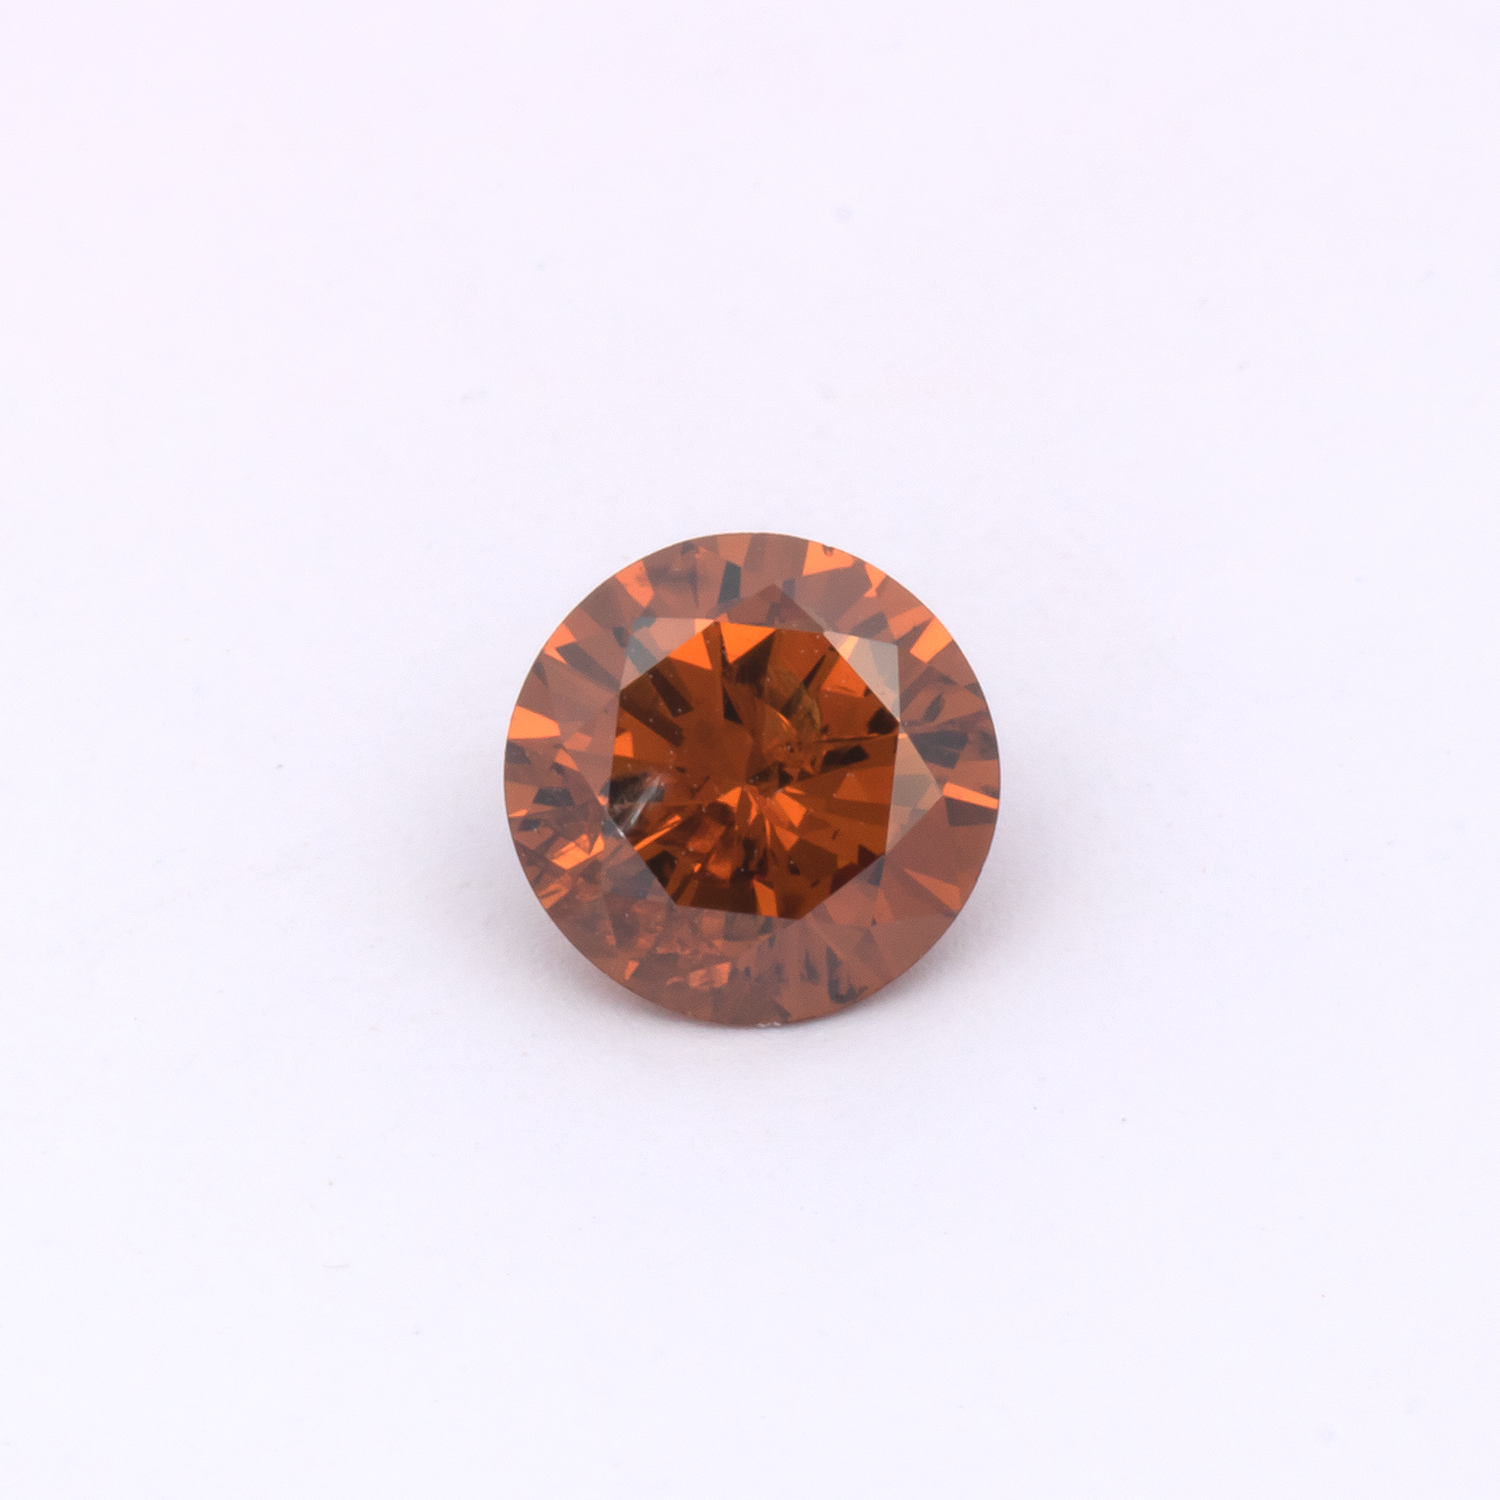 Diamant - braun & orange, rund, 6.4x6.4 mm, 0.87 cts, Nr. DT1011